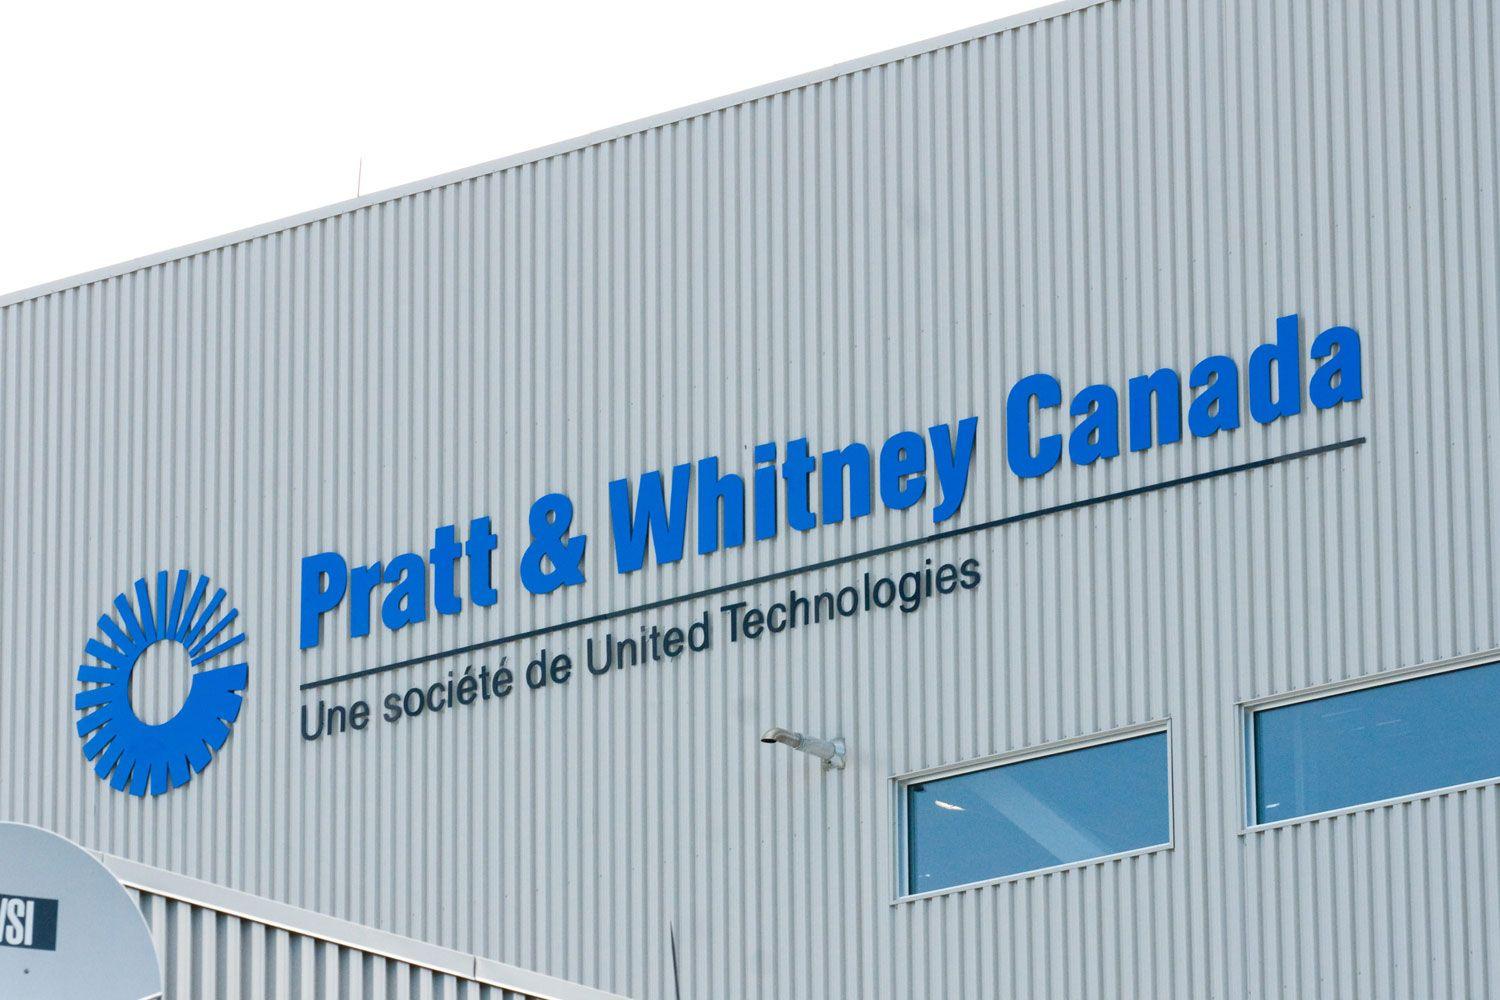 Pratt and Whitney Canada Logo - Ottawa investing $300M in Pratt & Whitney to help jet engine development